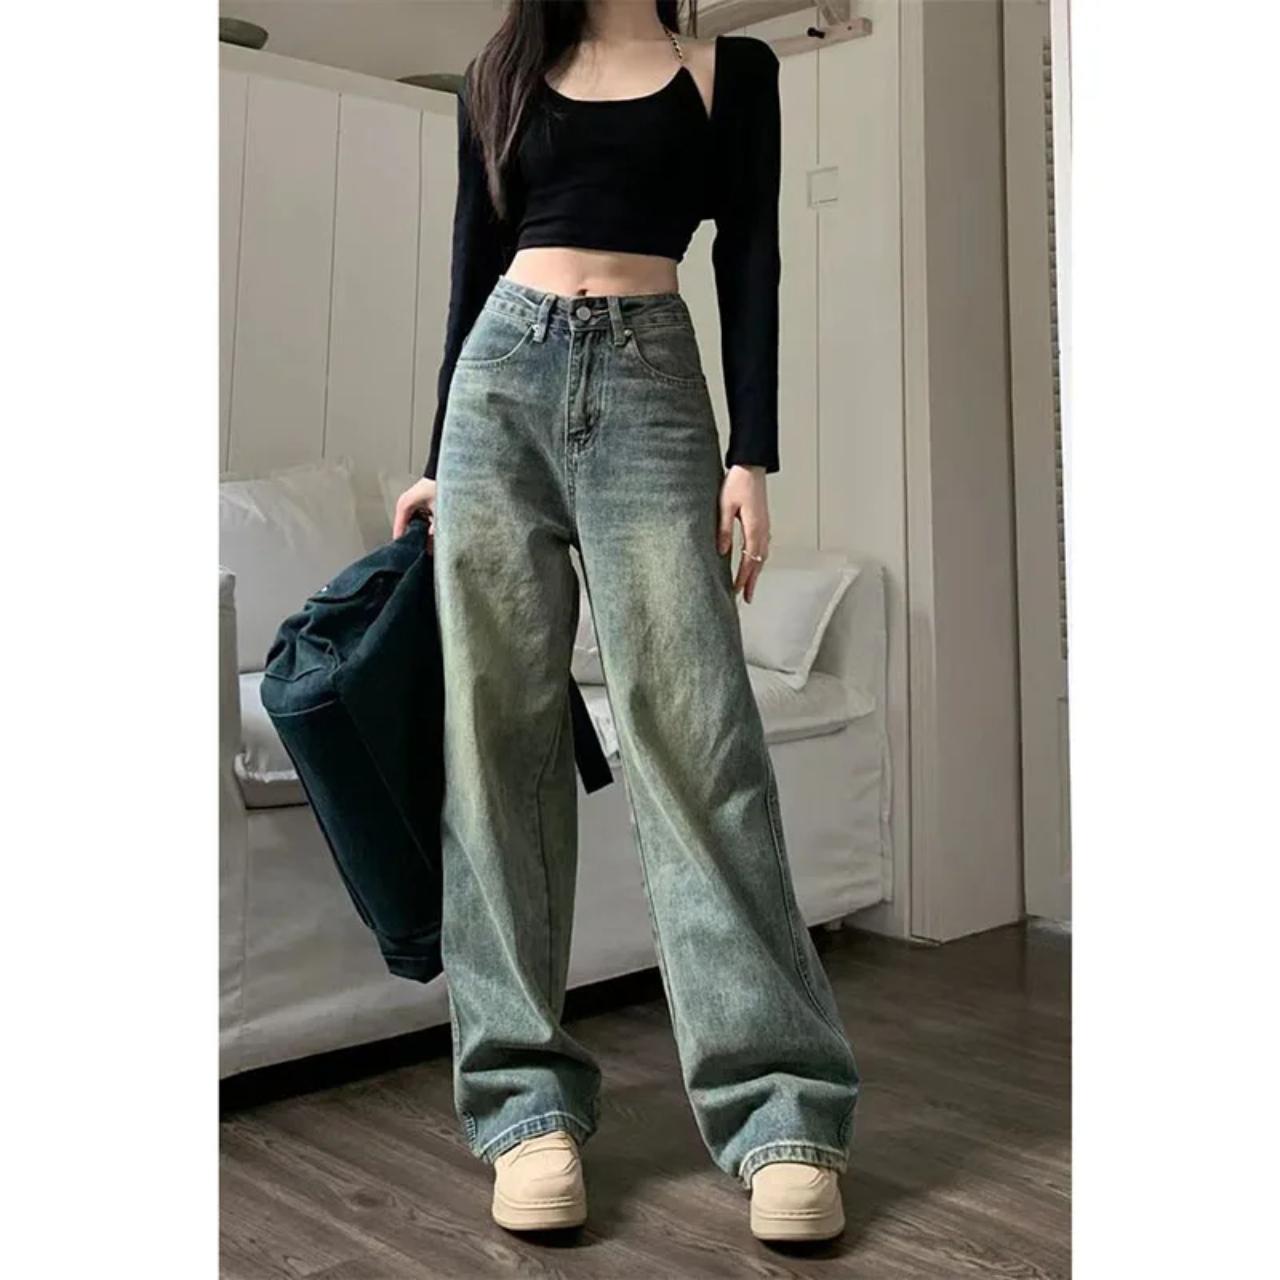 Vintage 90S Baggy Straight Denim Jeans Female Y2K... - Depop